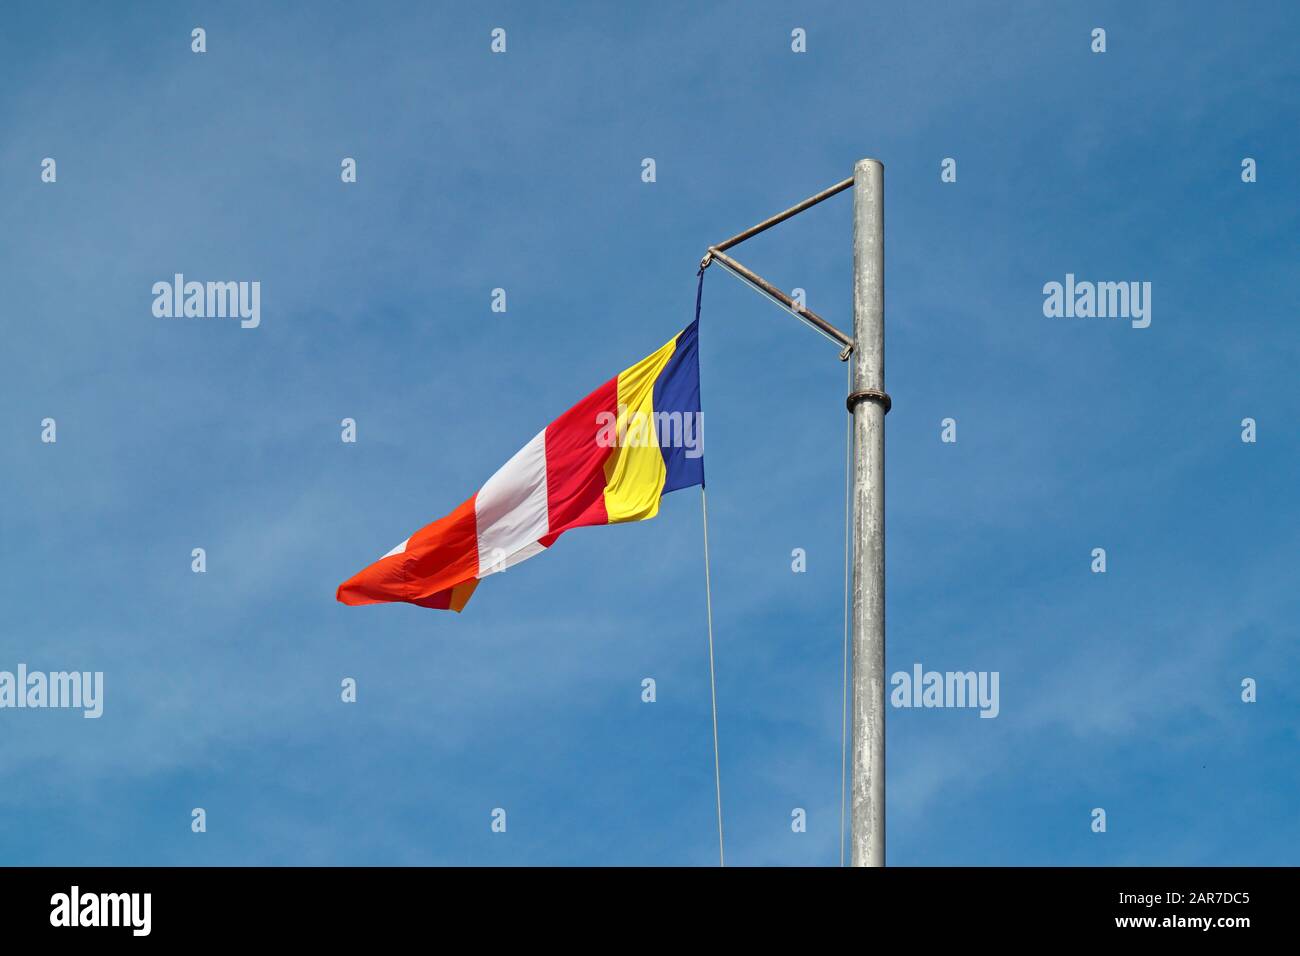 La Bandera Budista en un polo de bandera de acero galvanizado contra un cielo azul Foto de stock